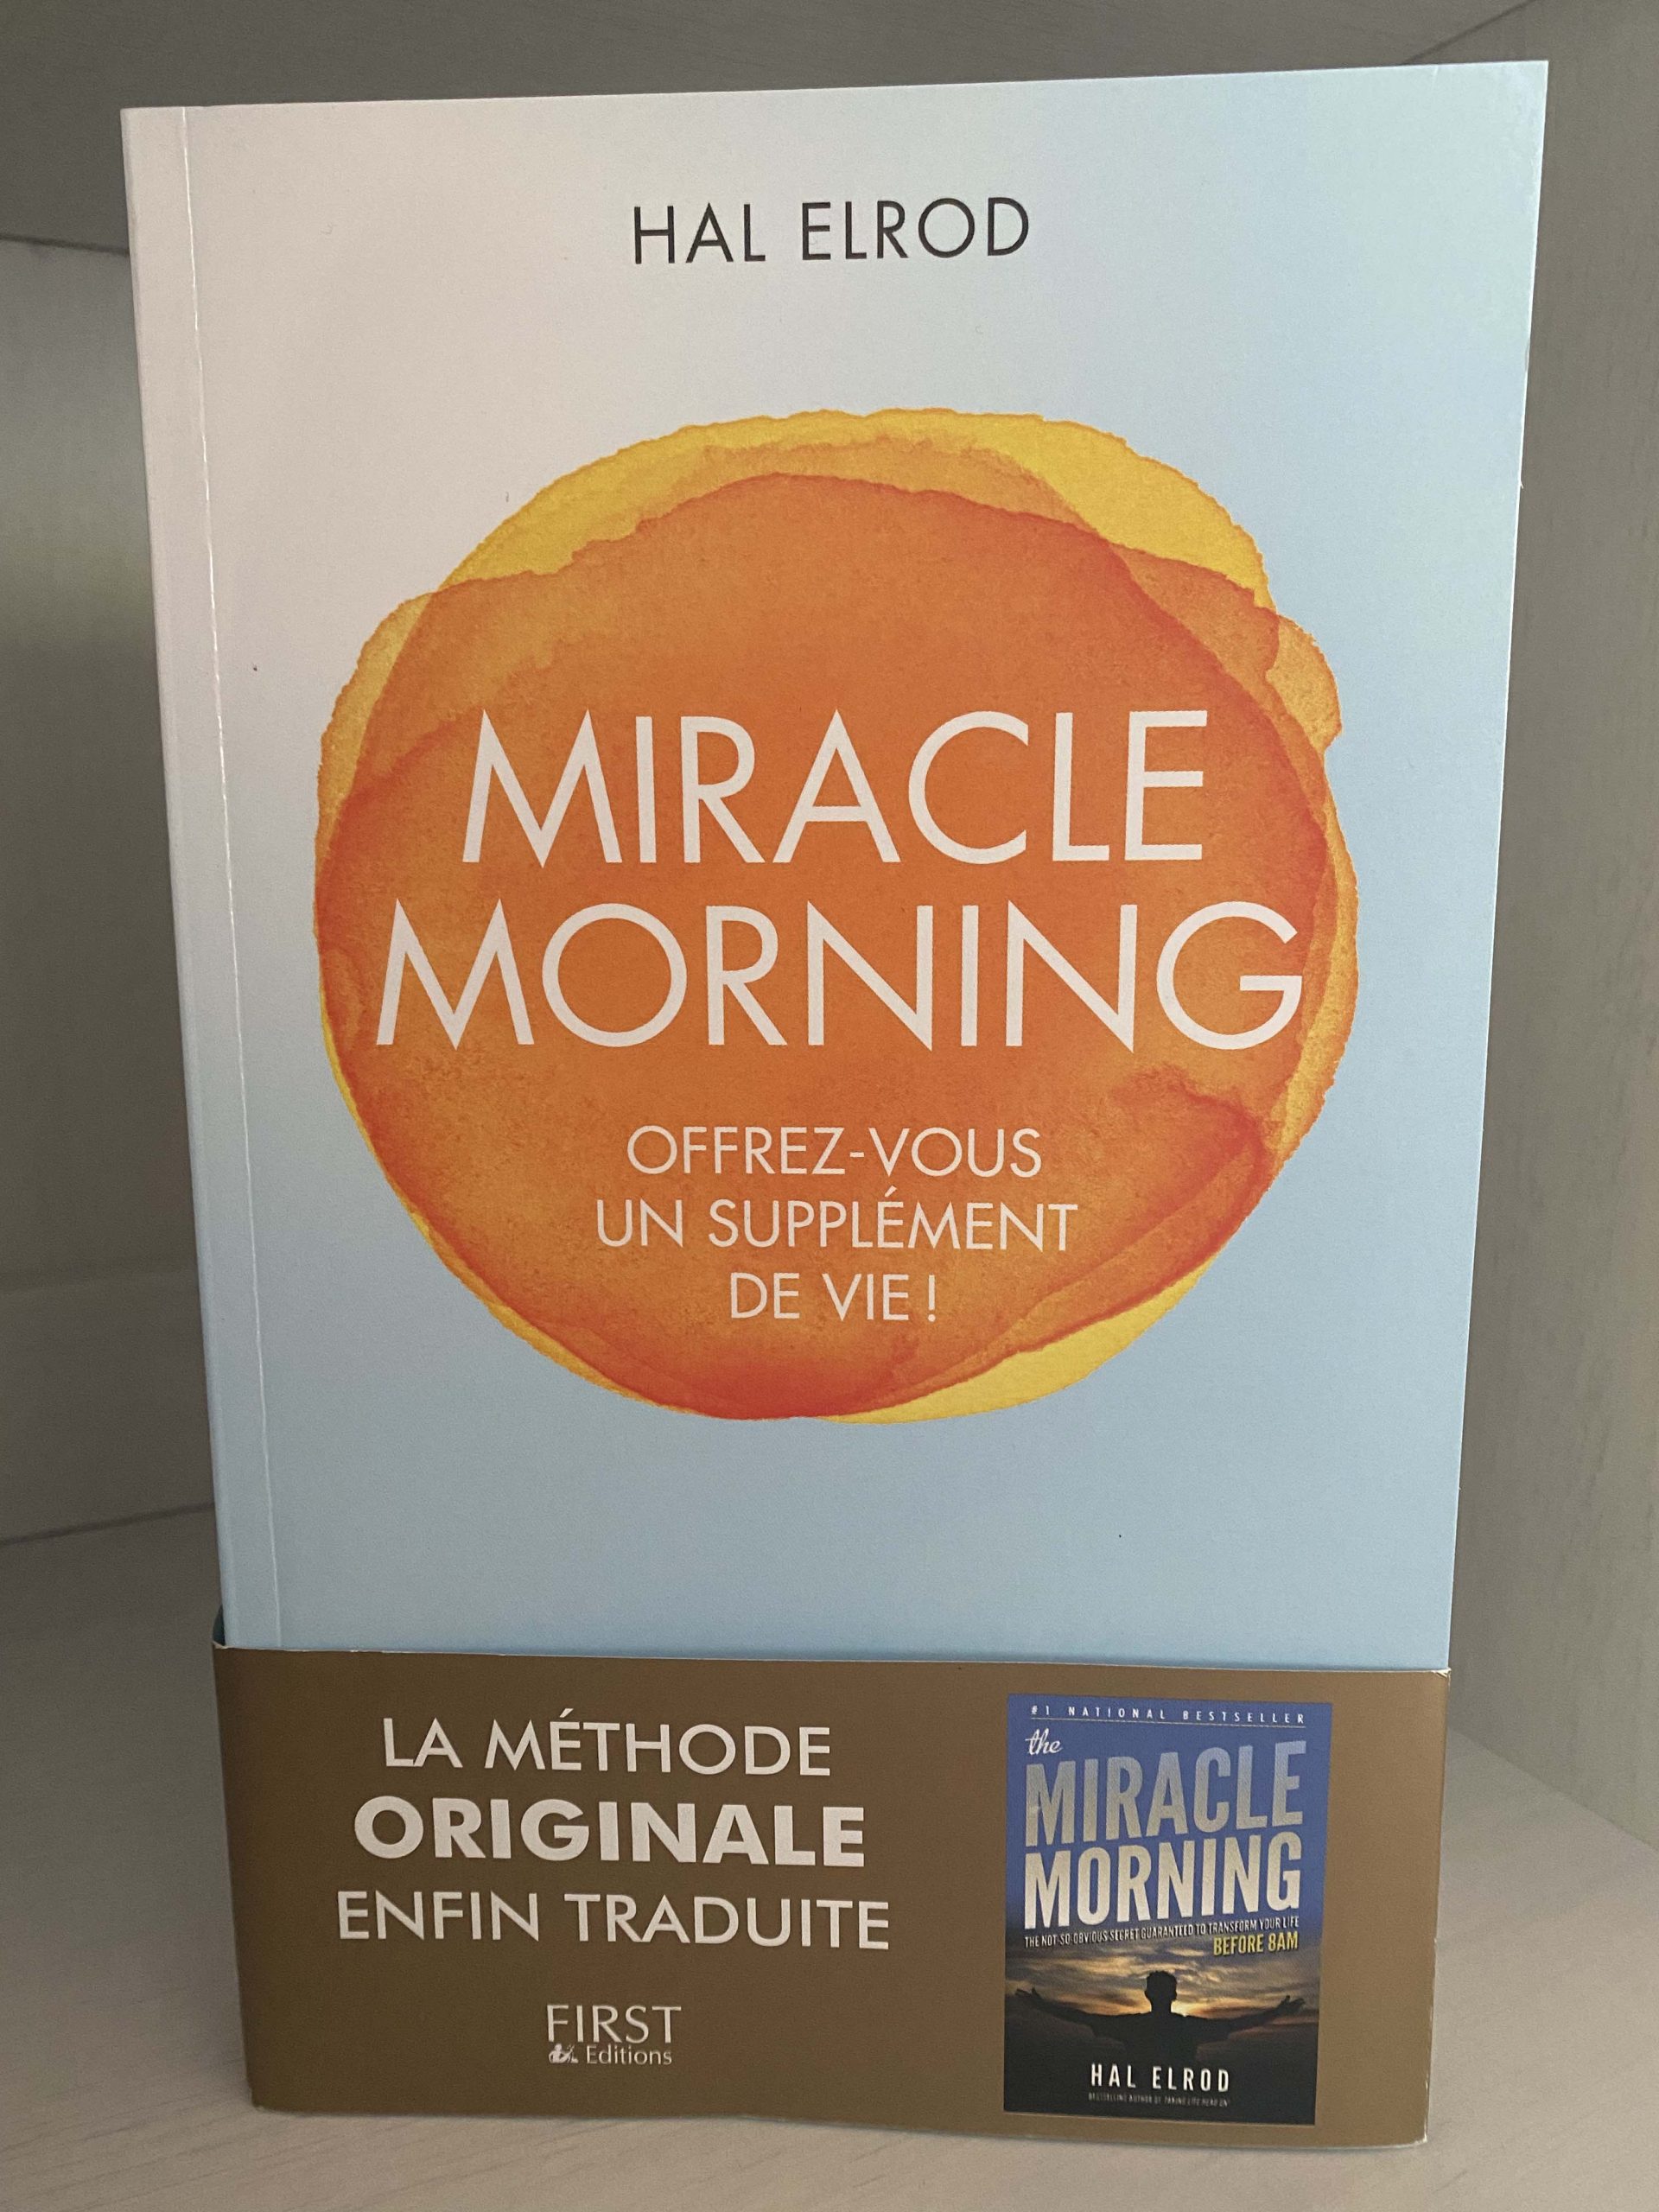 Le livre "Miracle Morning" traduit en français